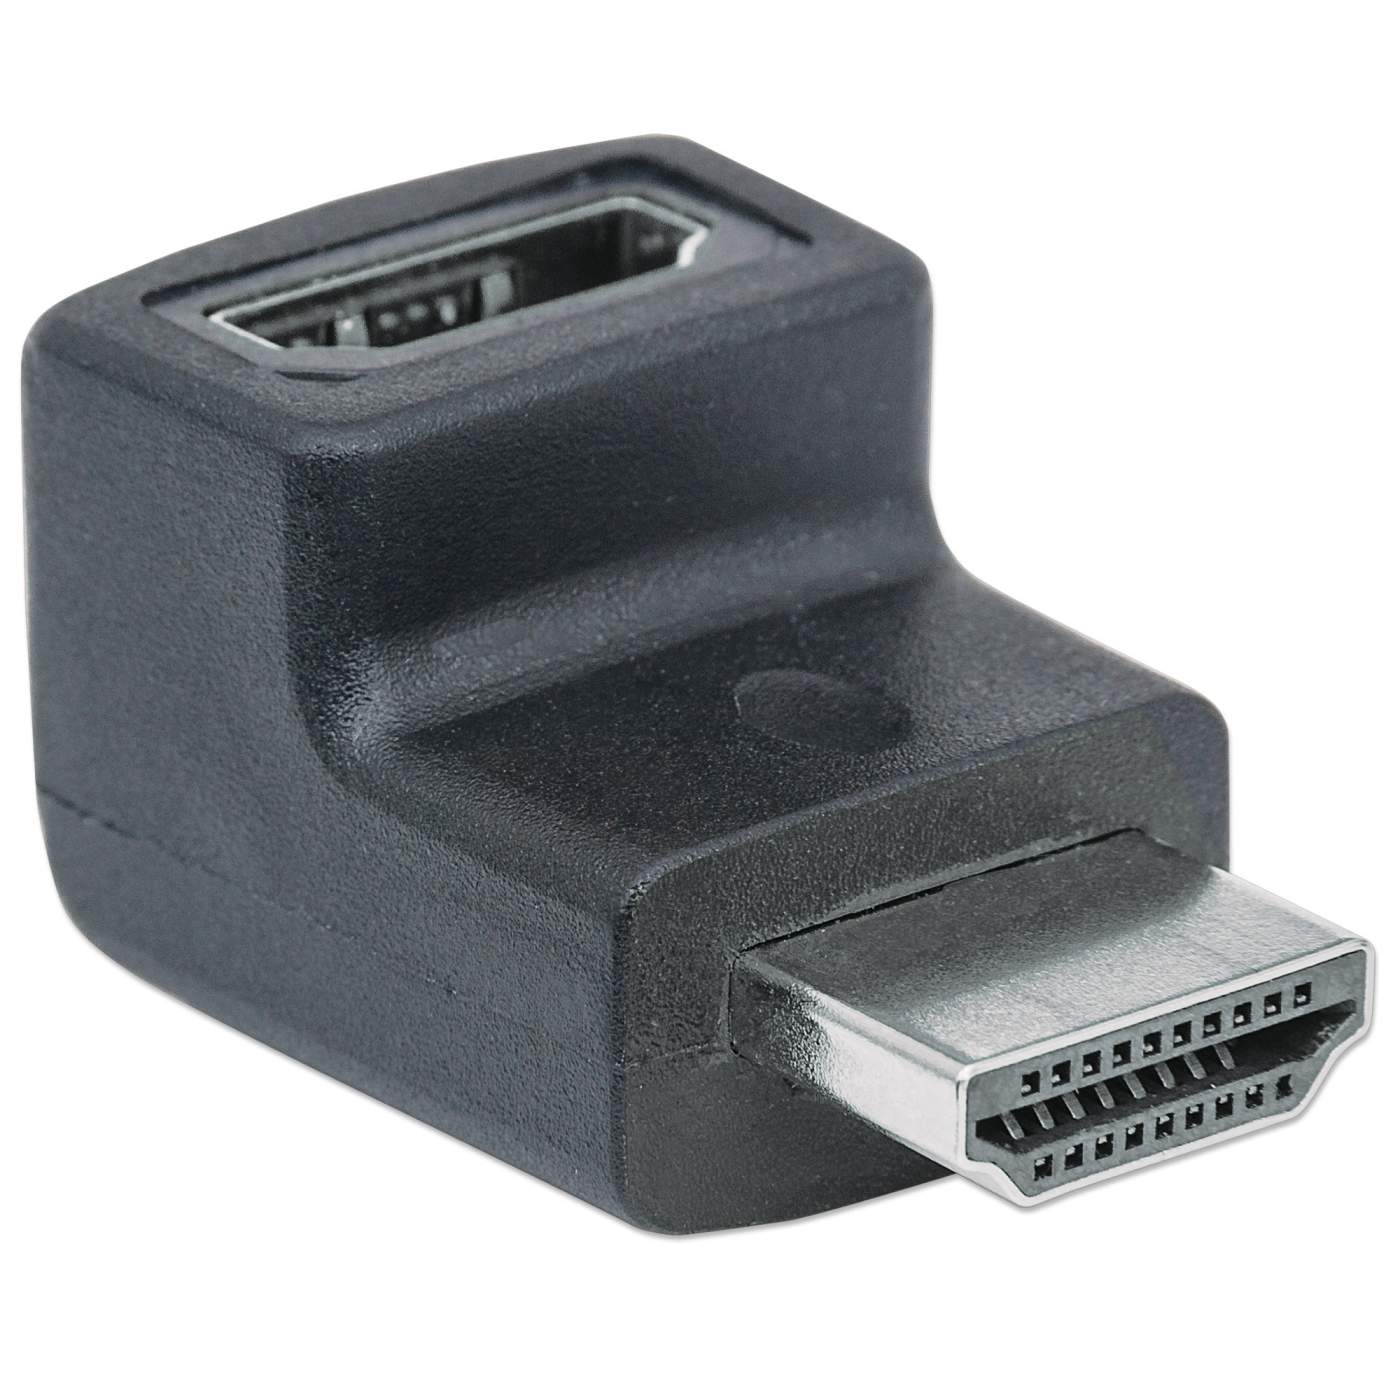 Adaptador Convertidor Conector Hdmi A Mini Hdmi - U$S 2,00